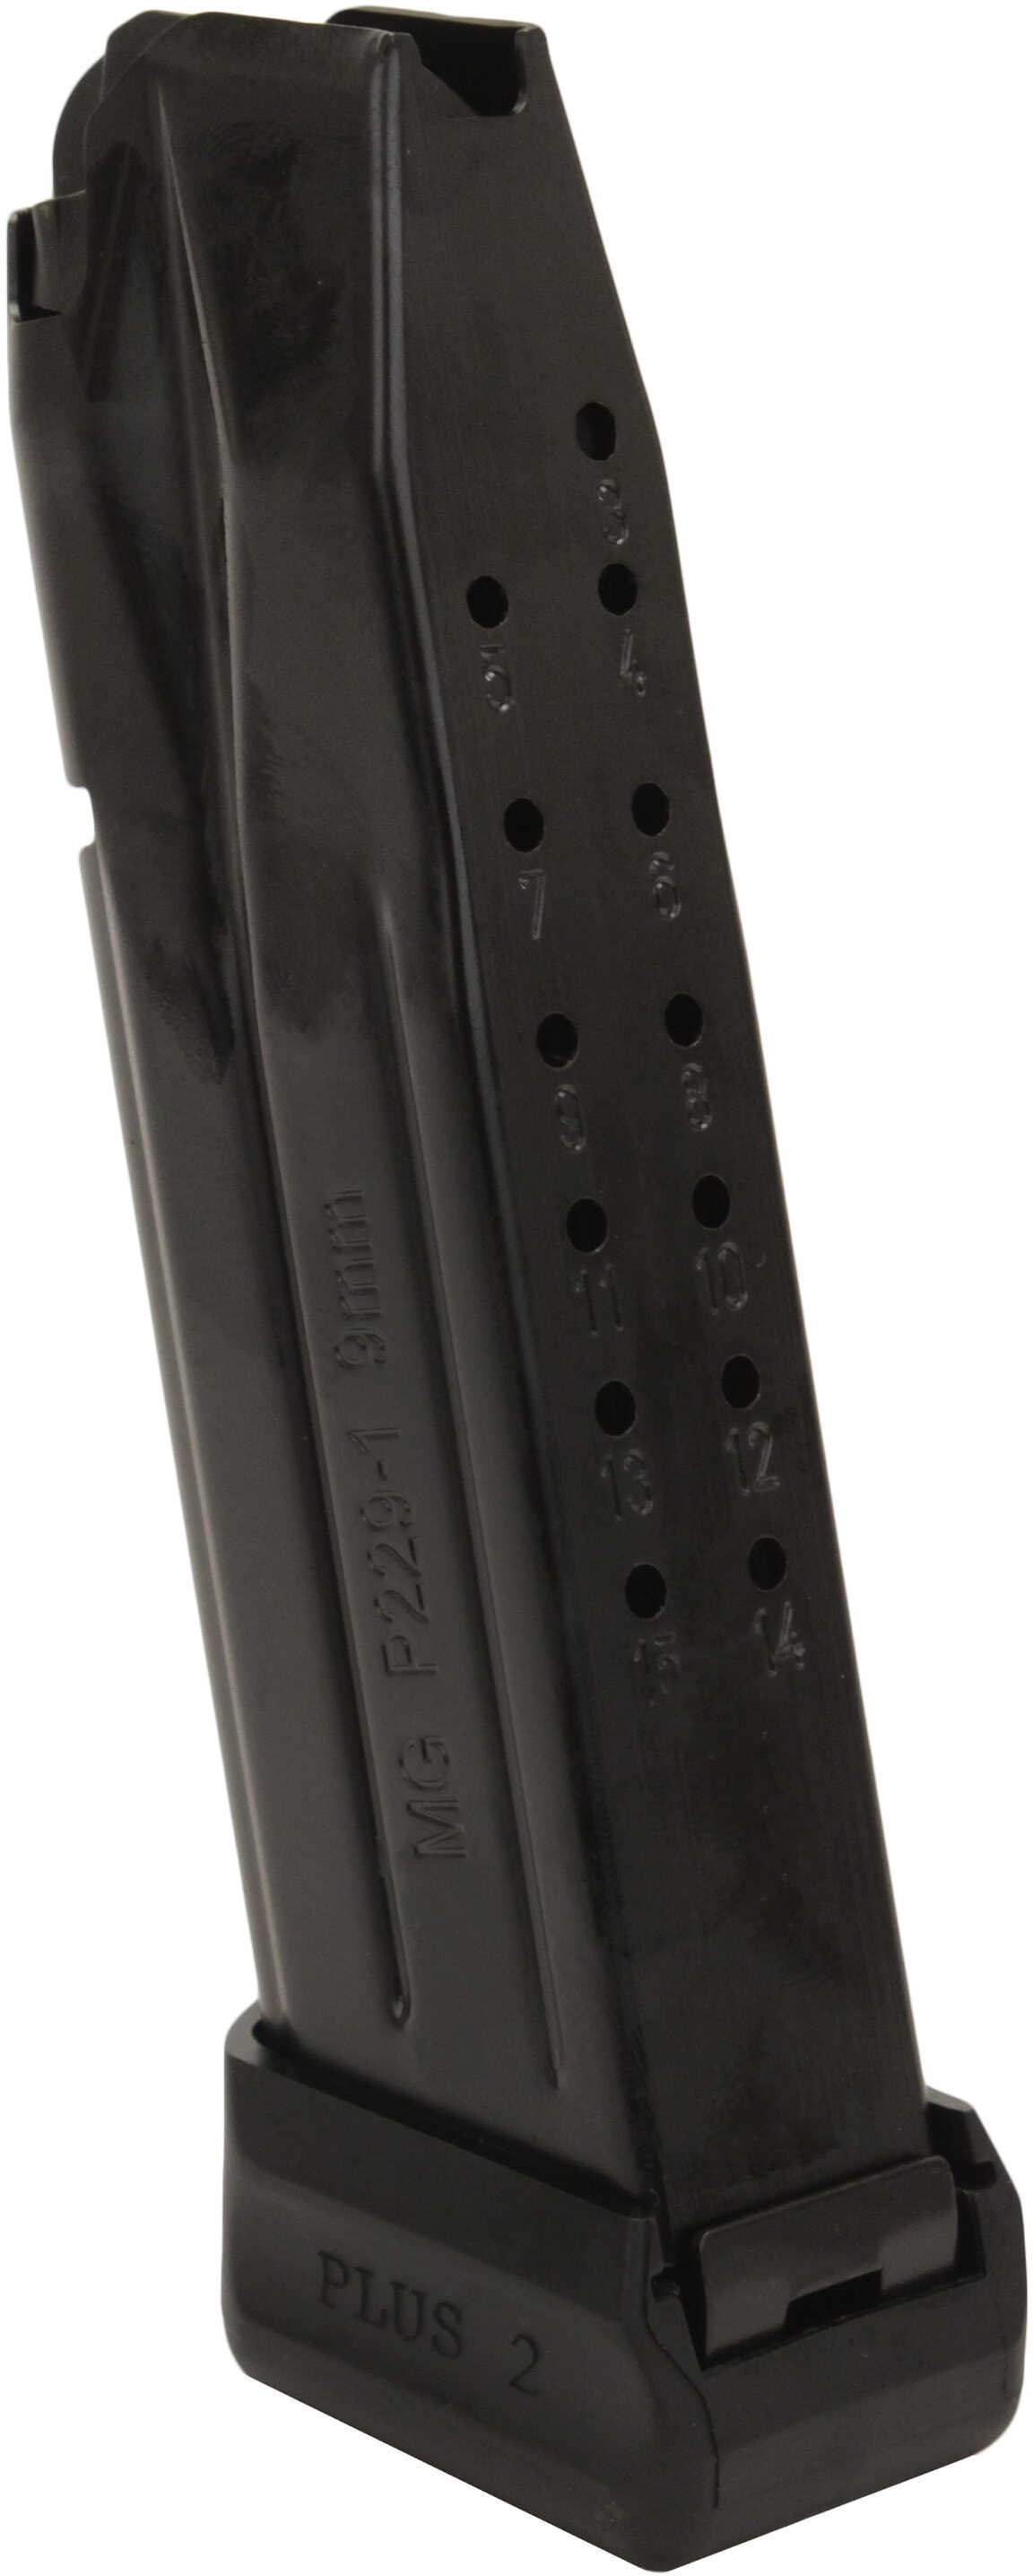 Mec-Gar Sig Sauer P229 Hi Cap Ext. Magazine 9mm Luger 17Rd Black